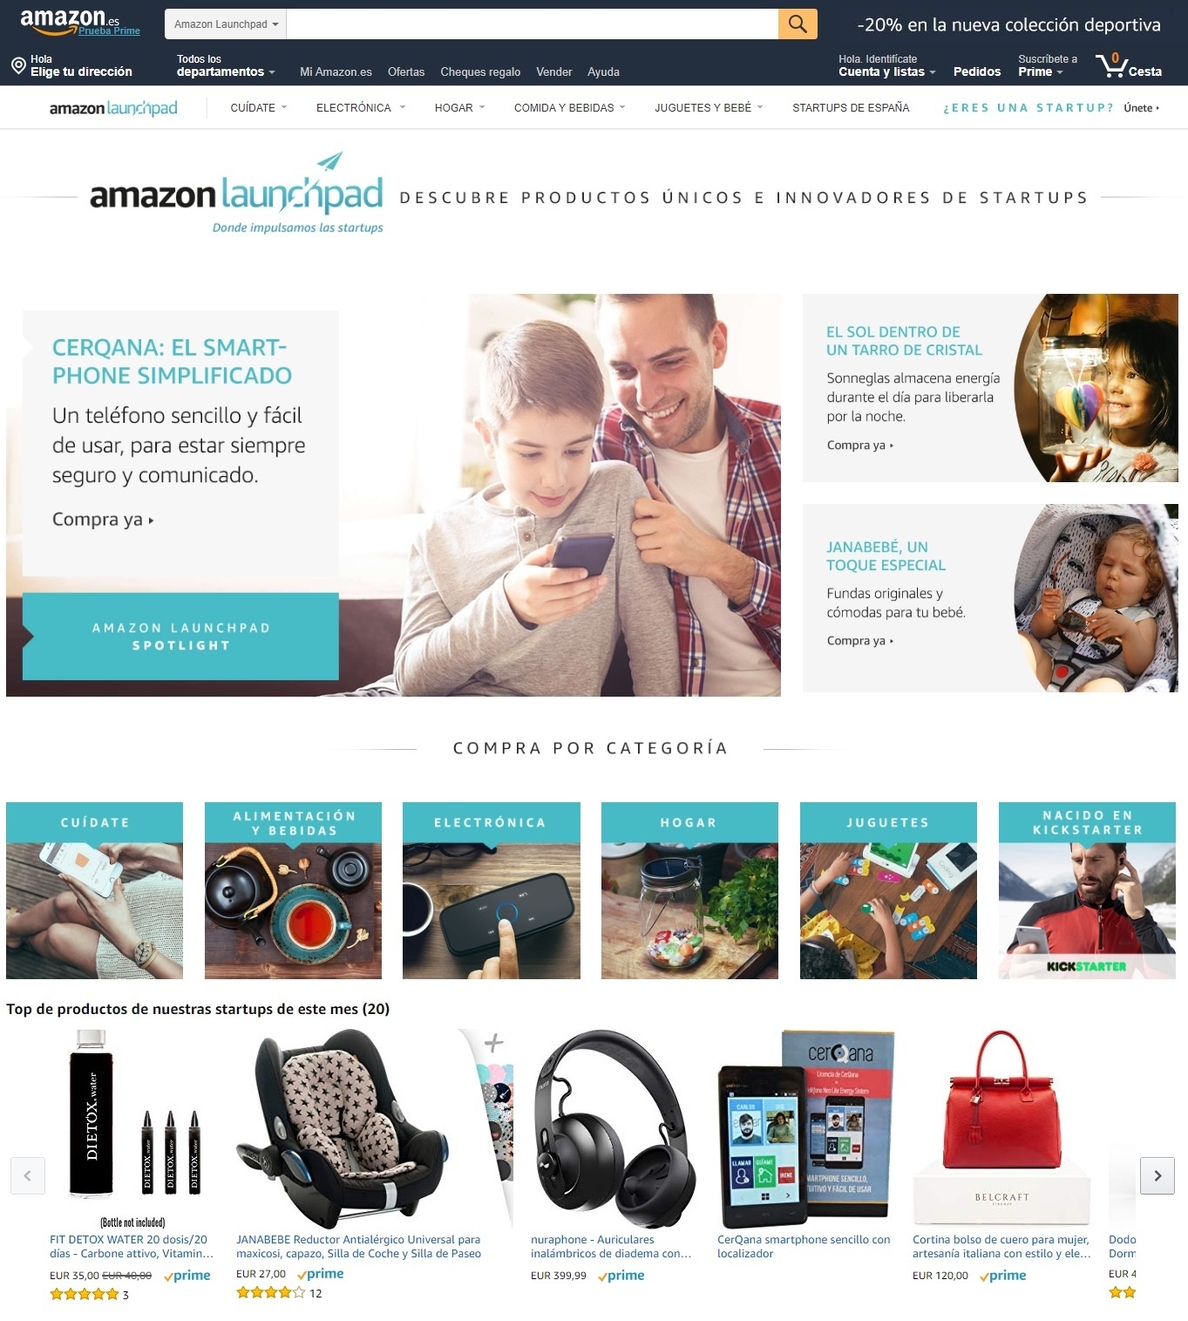 Amazon crea Amazon Launchpad, una plataforma que ayuda a las »startups» a lanzar nuevas ideas de producto